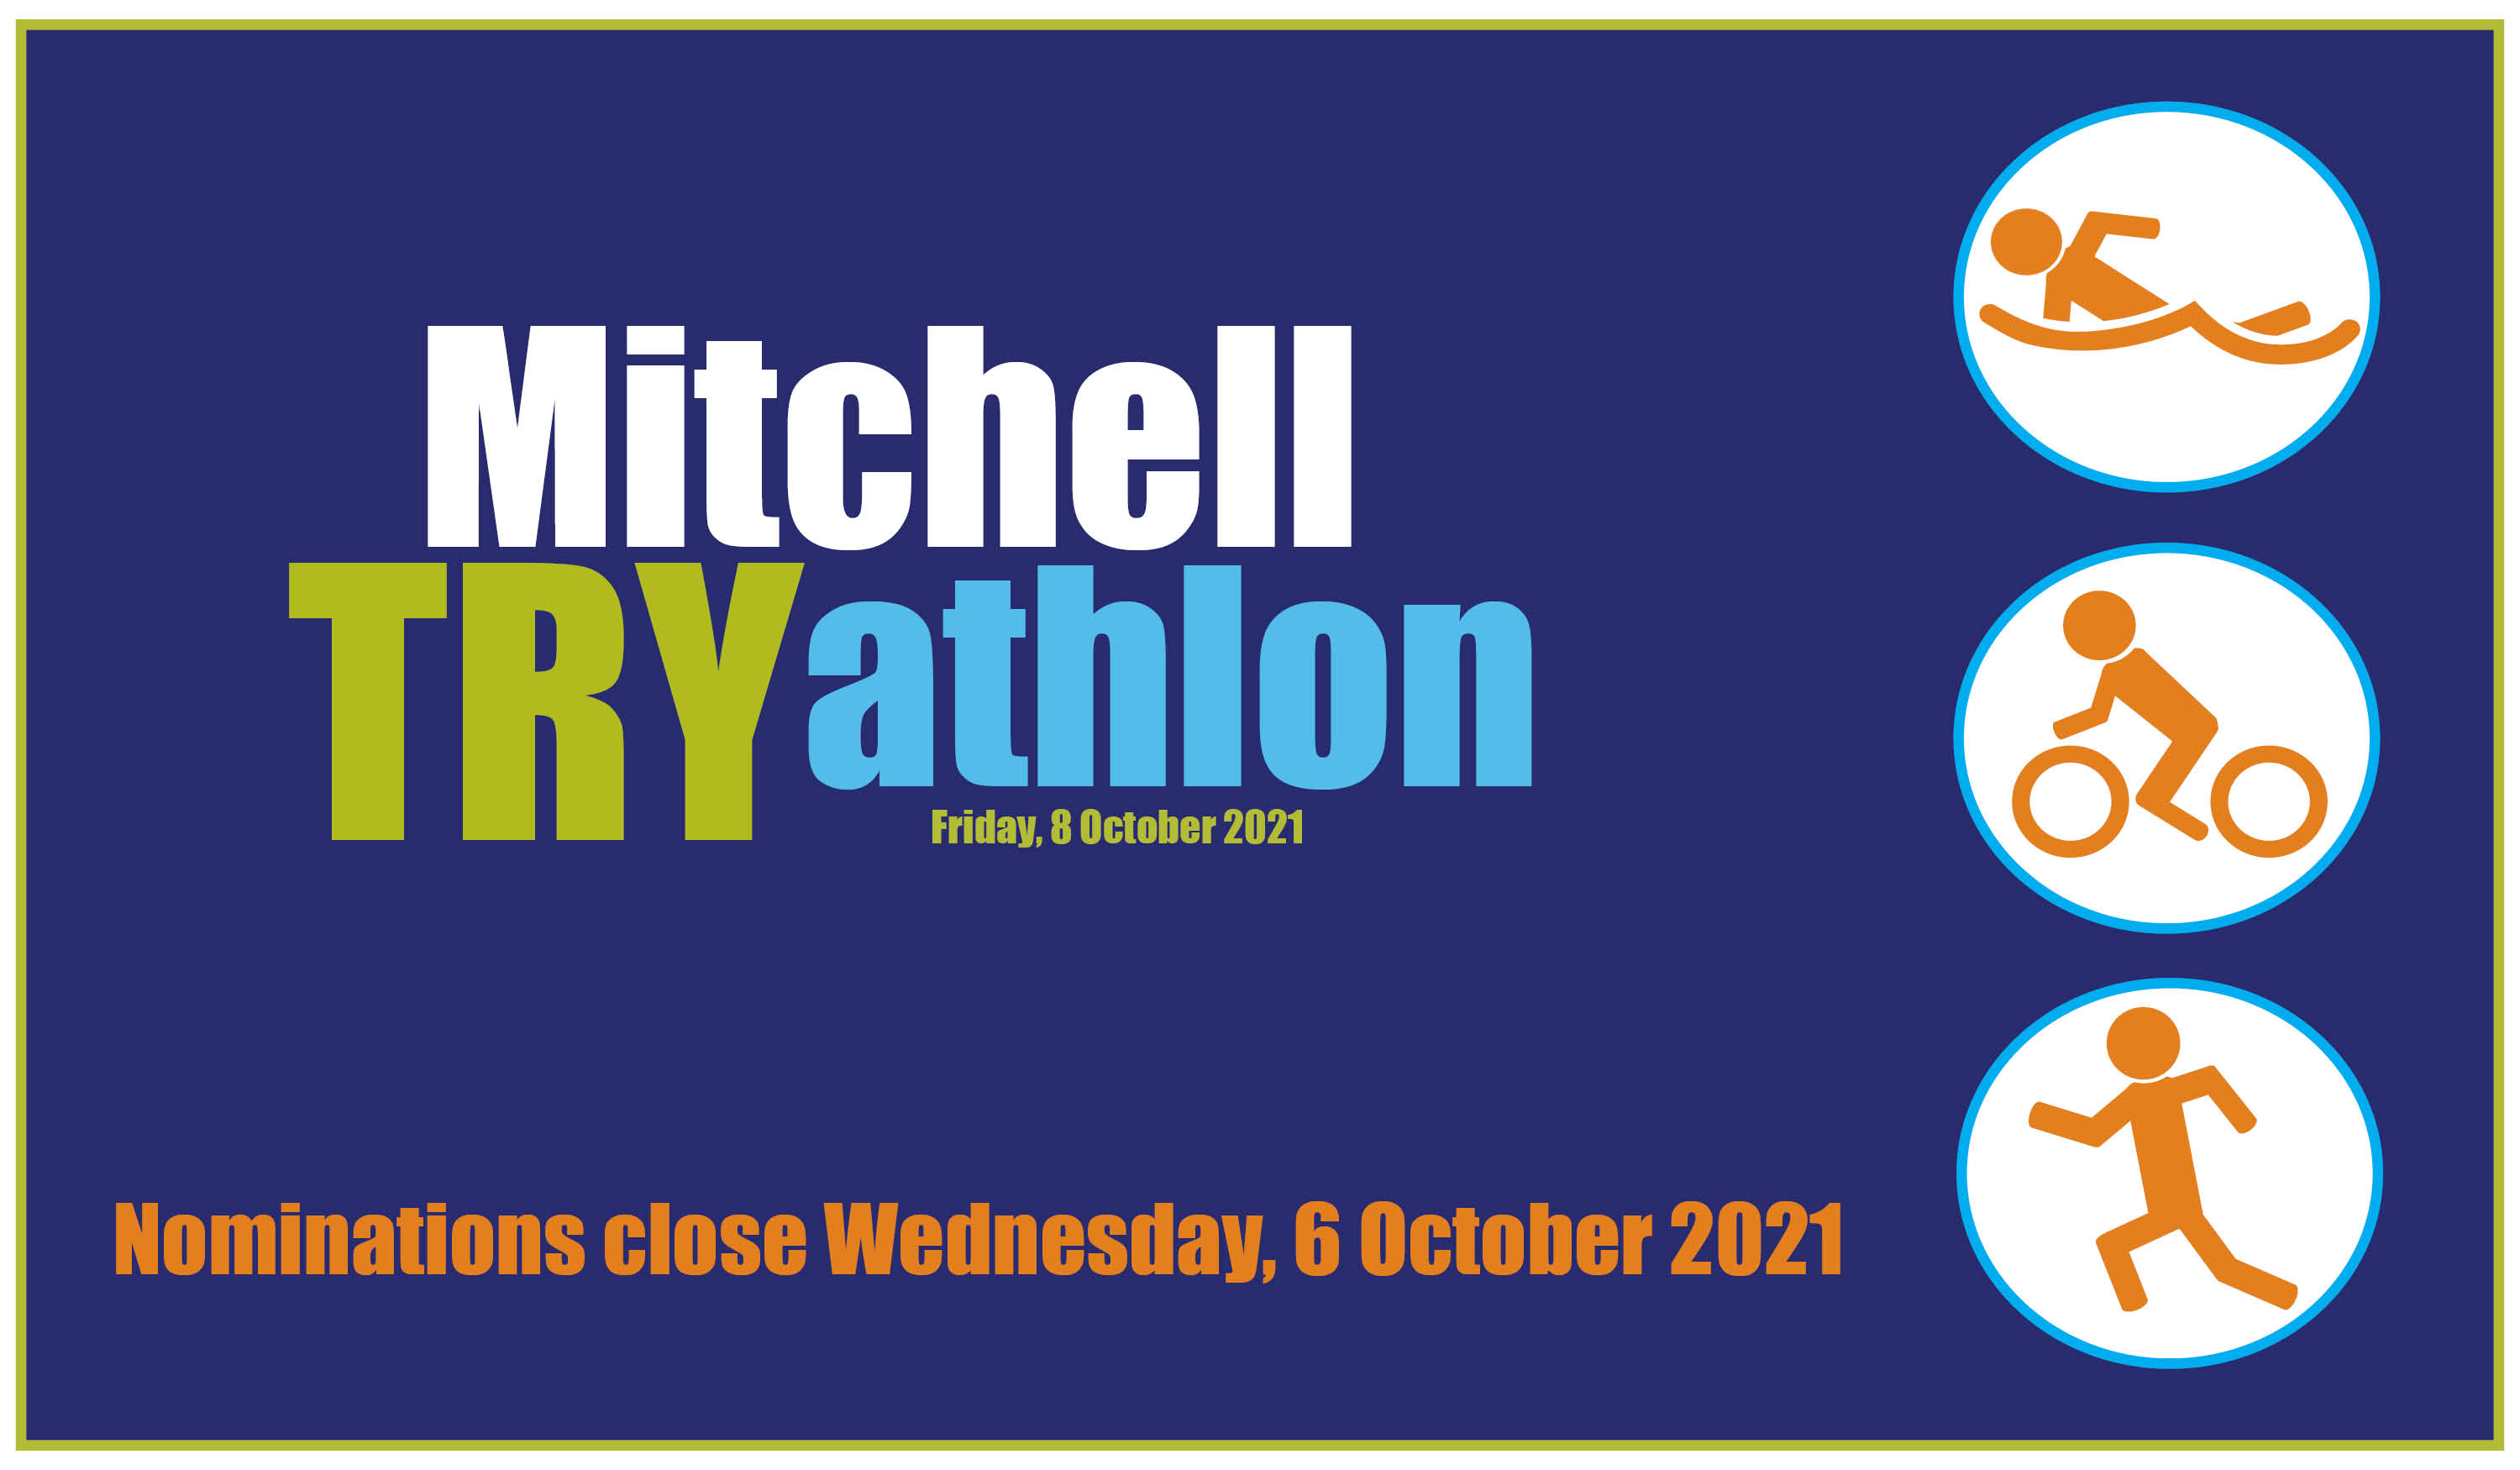 Mitchell tryathlon news